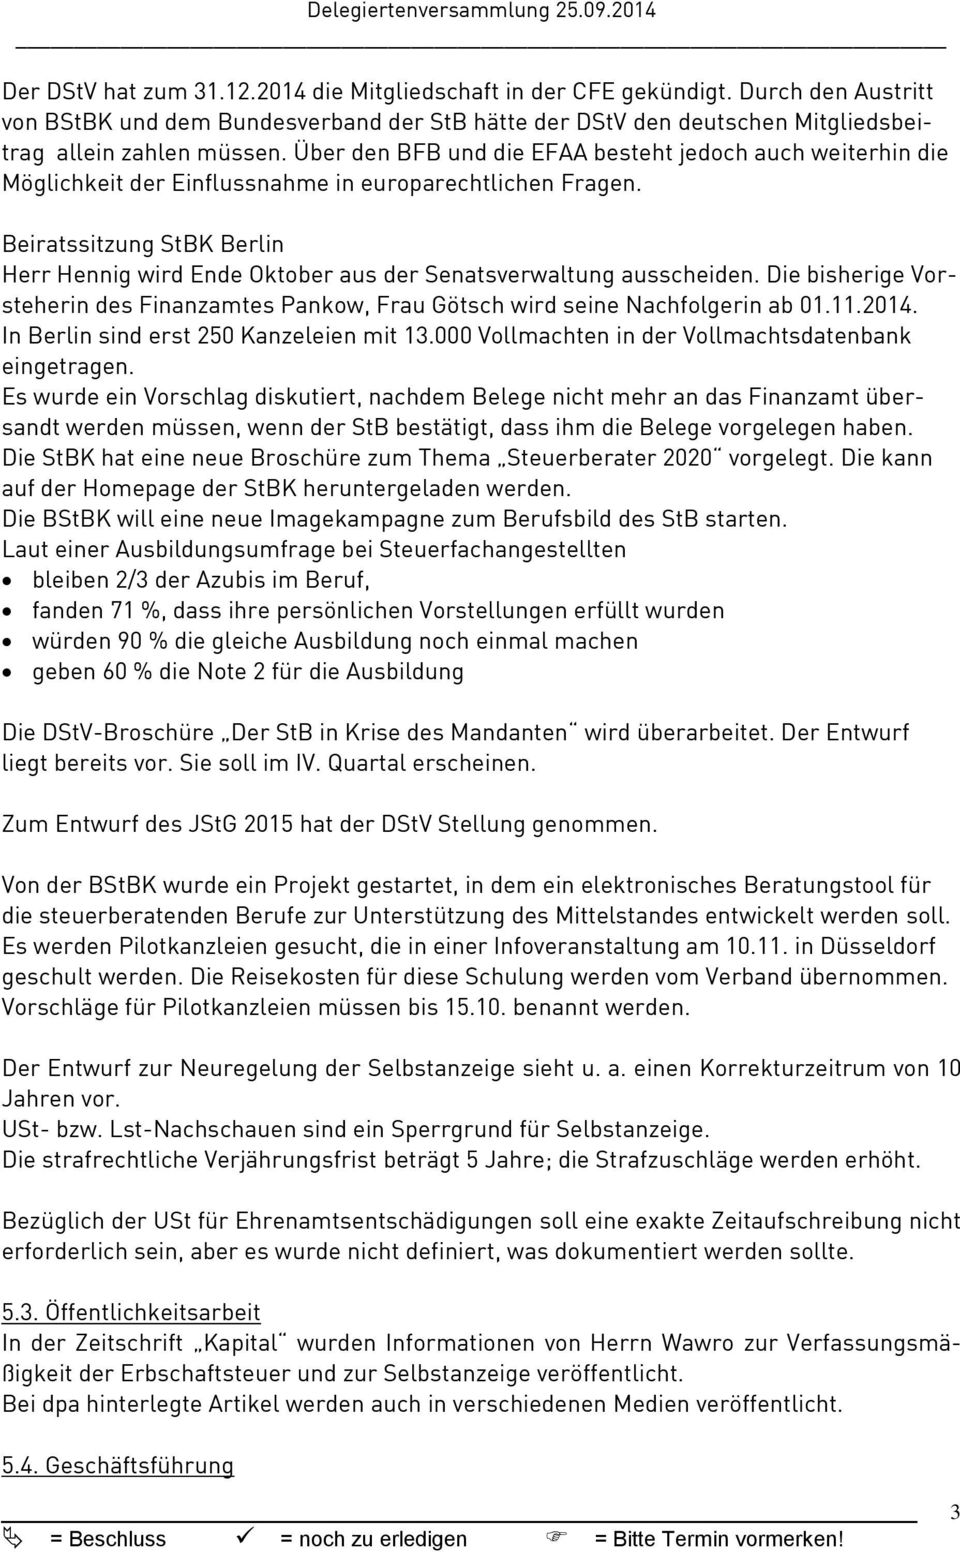 Beiratssitzung StBK Berlin Herr Hennig wird Ende Oktober aus der Senatsverwaltung ausscheiden. Die bisherige Vorsteherin des Finanzamtes Pankow, Frau Götsch wird seine Nachfolgerin ab 01.11.2014.